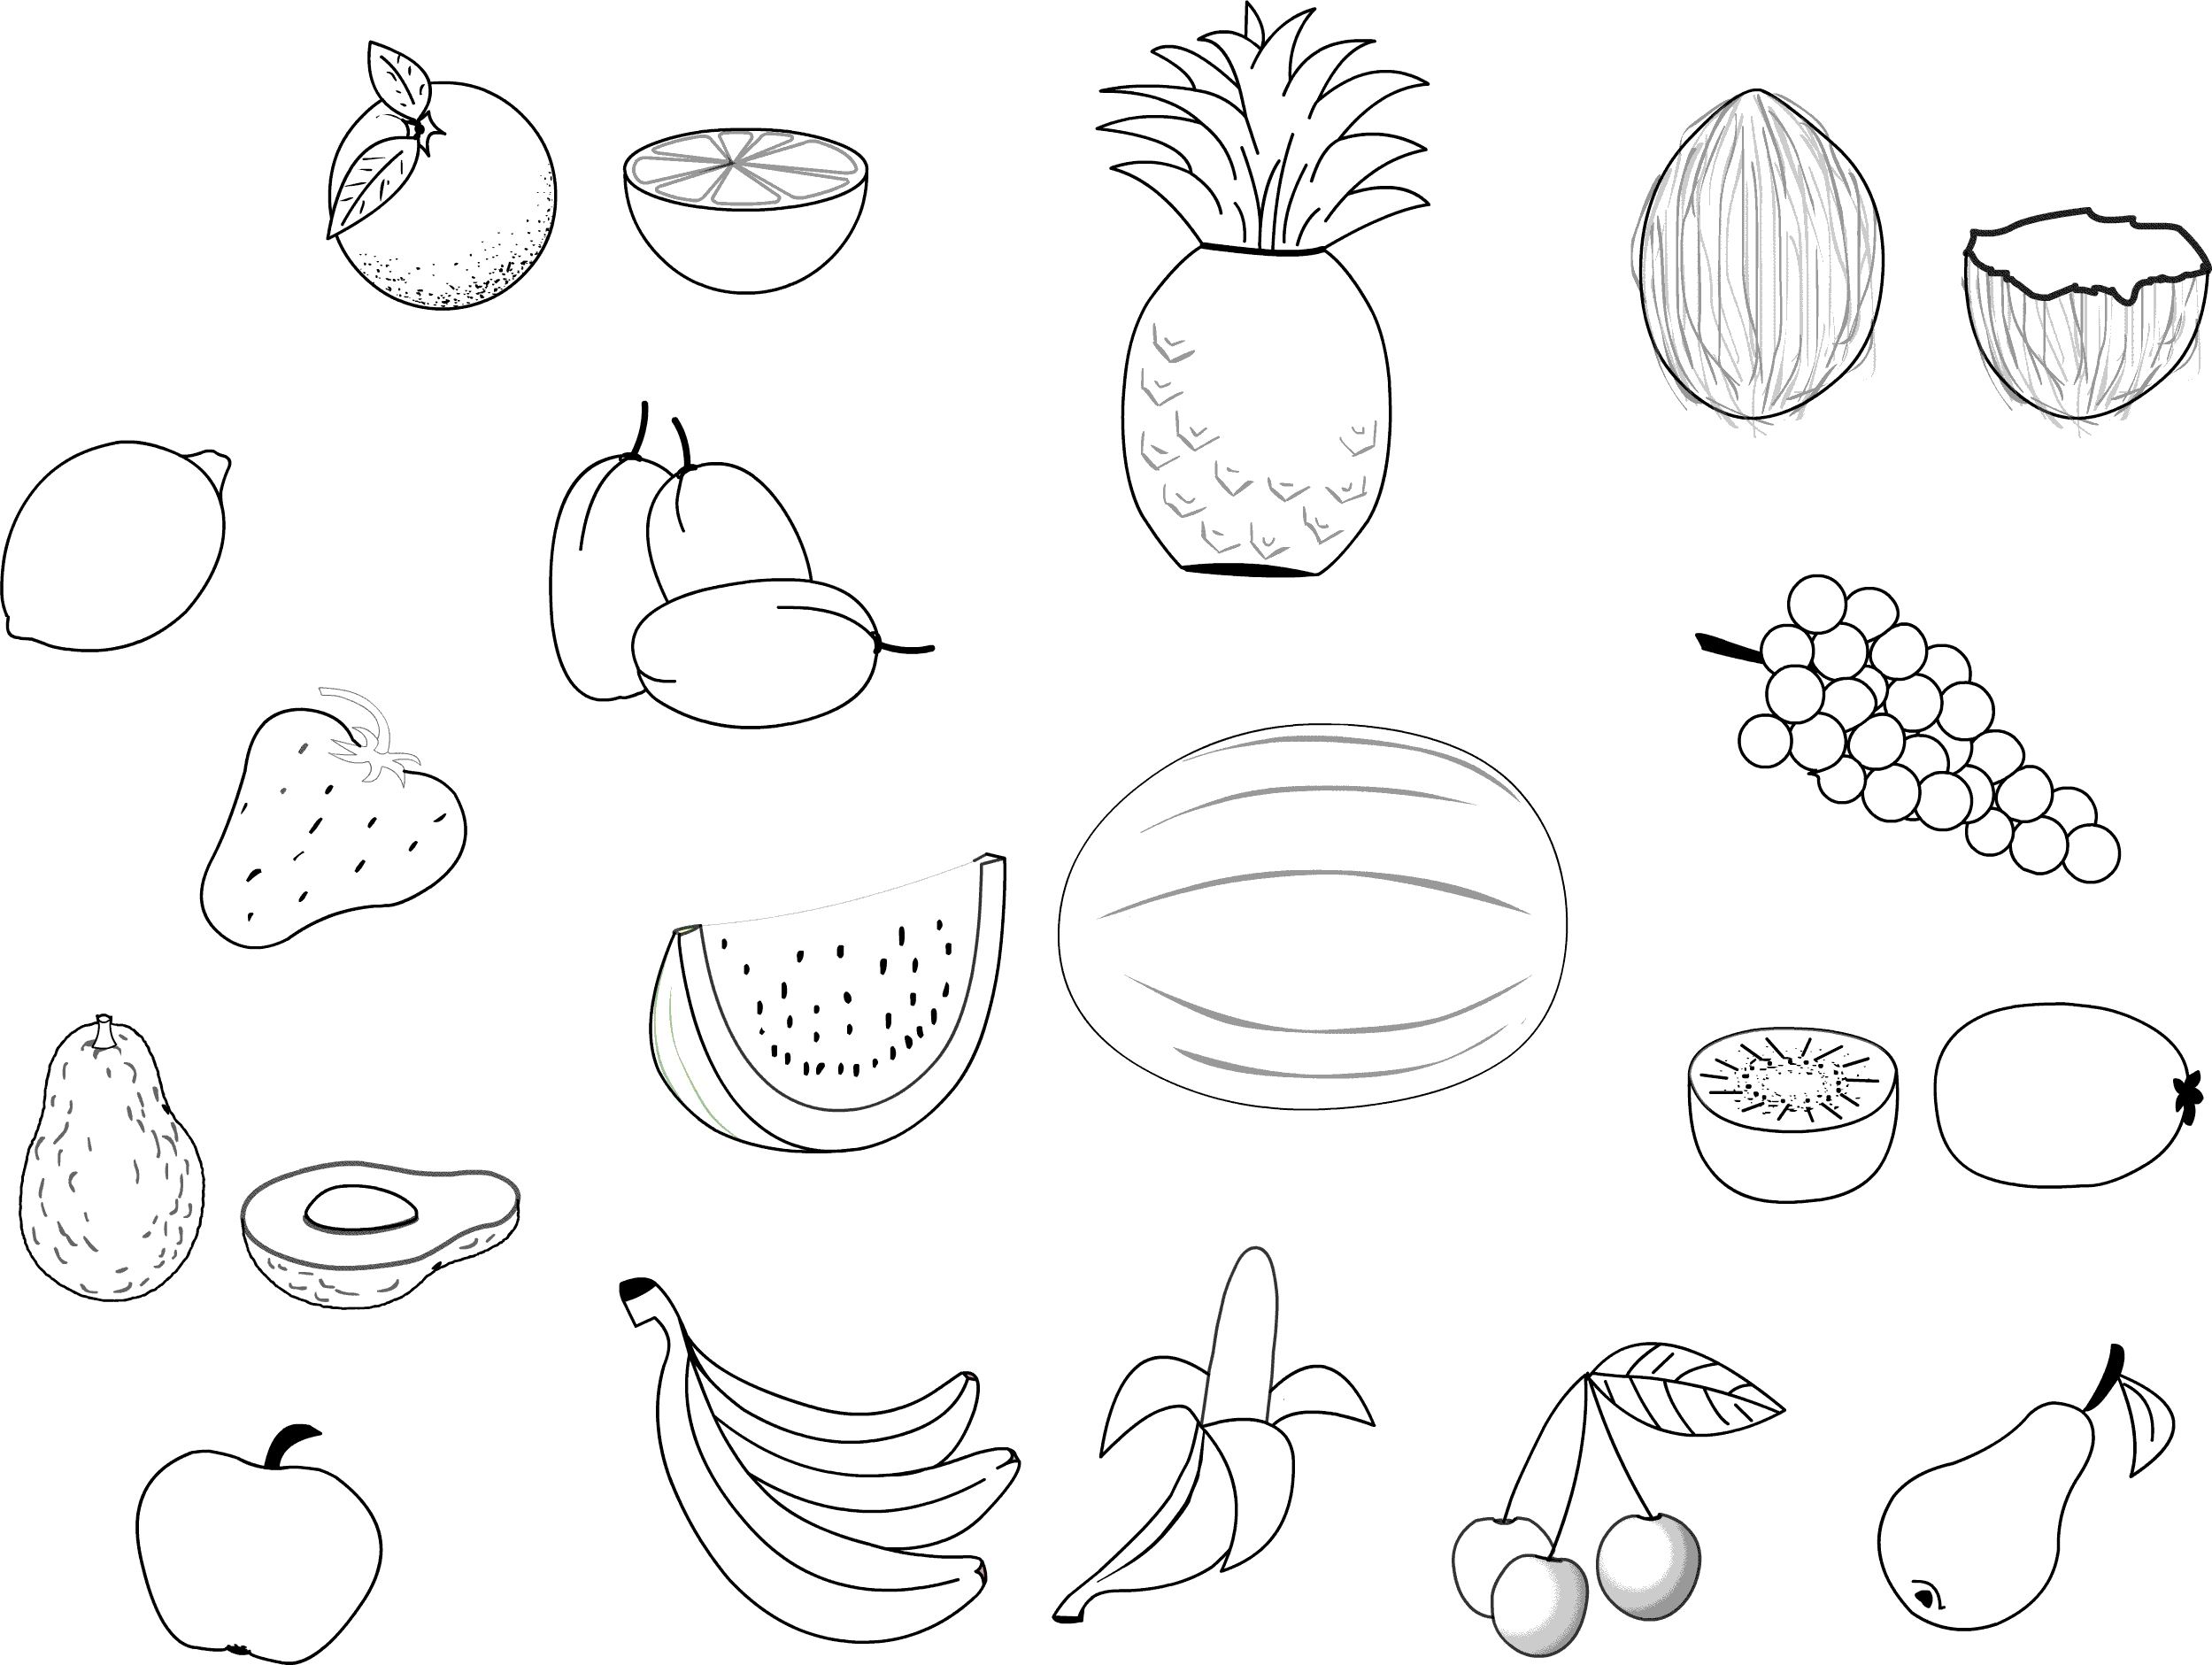 Image de légumes à colorier